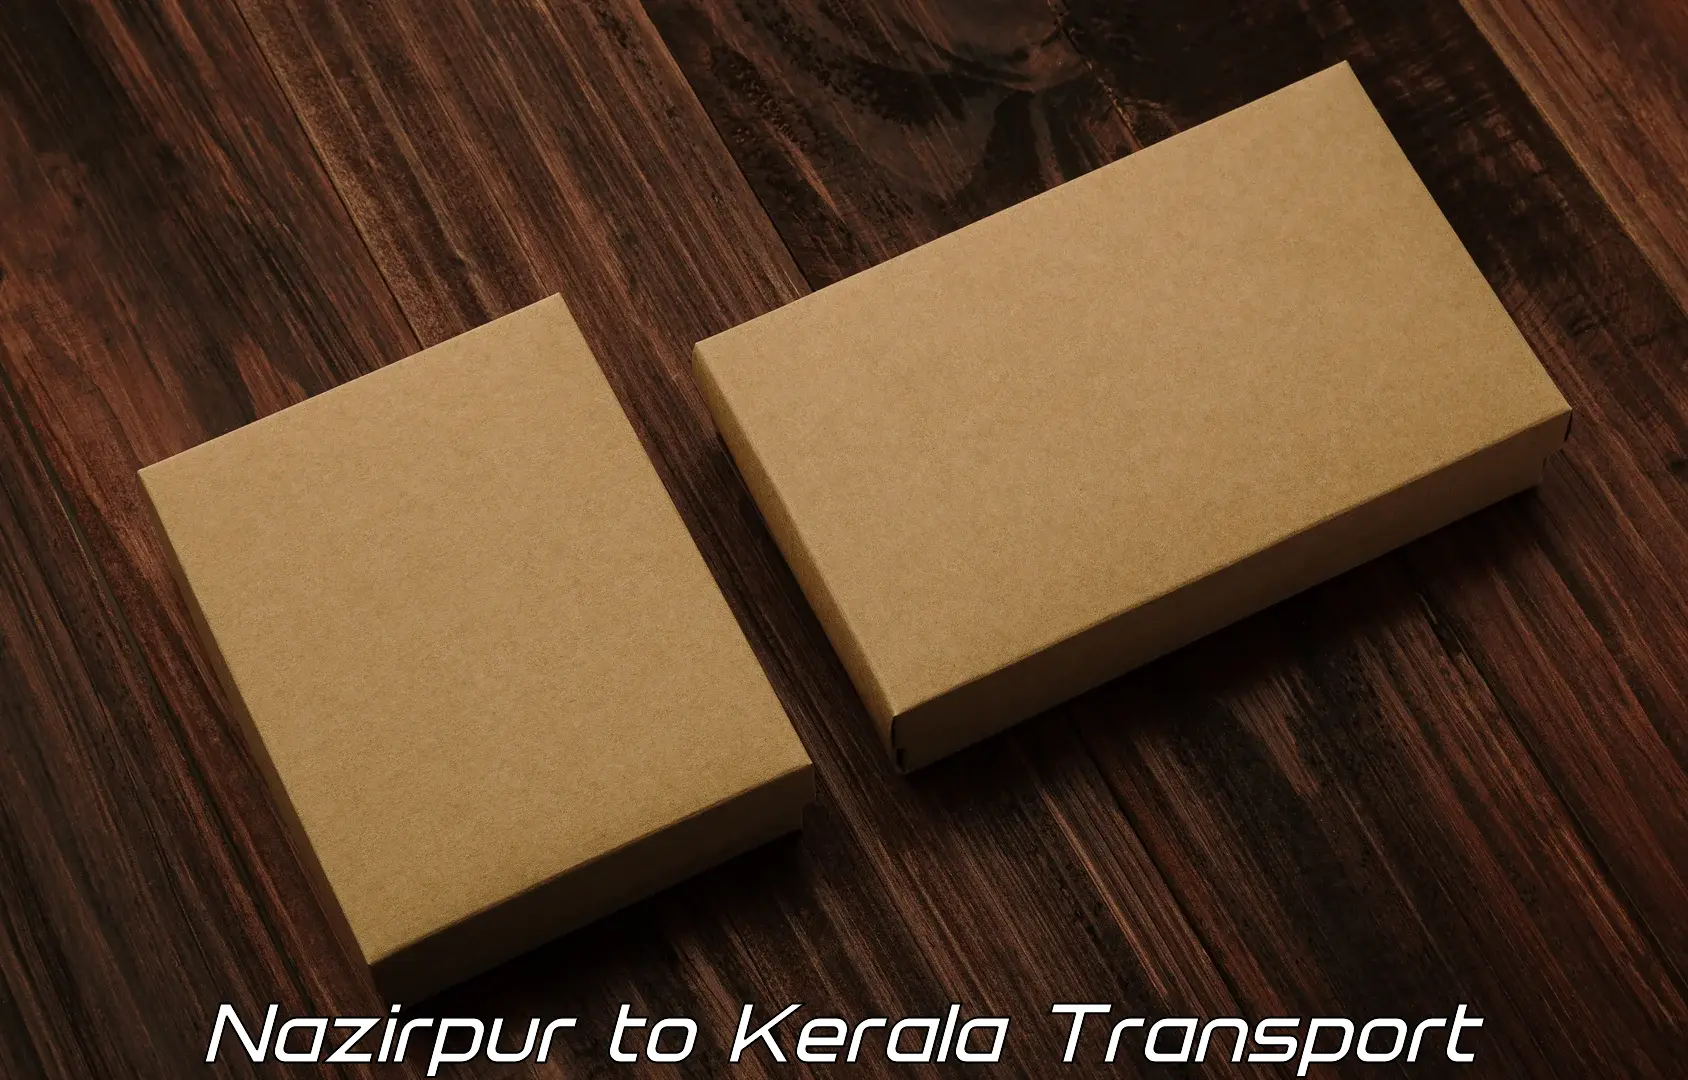 All India transport service Nazirpur to Kallikkad